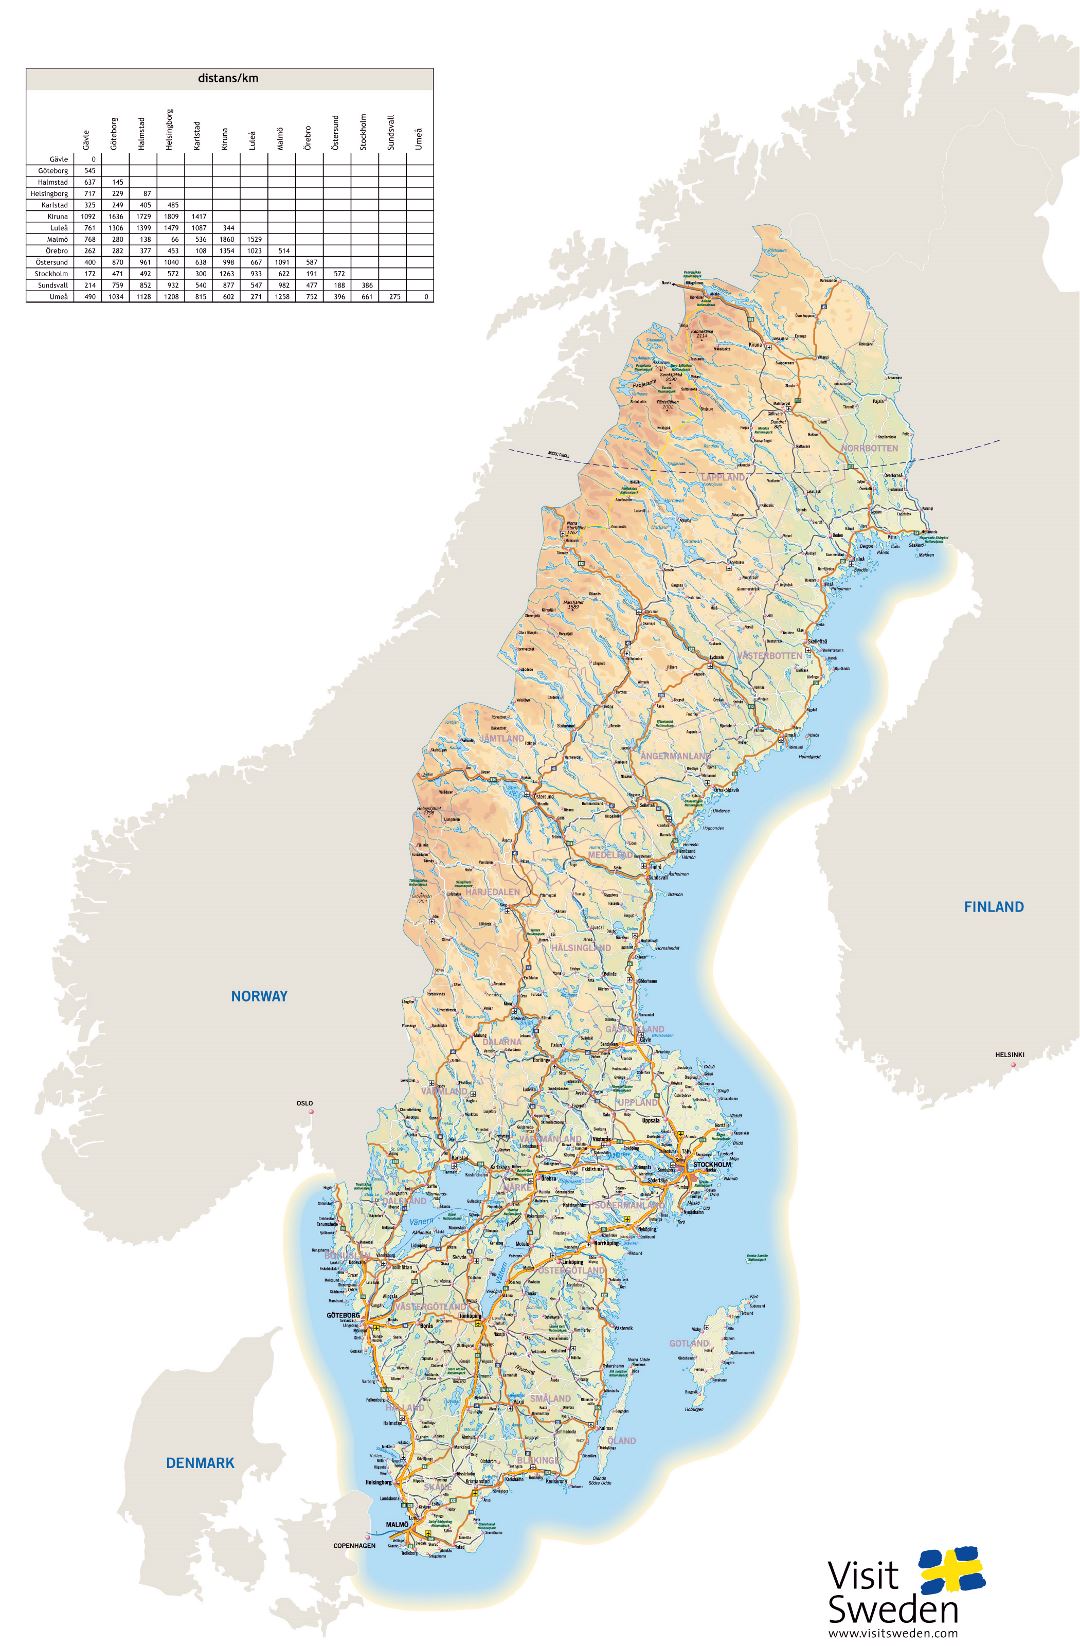 Grande detallado mapa de elevación de Suecia con carreteras, ciudades y aeropuertos